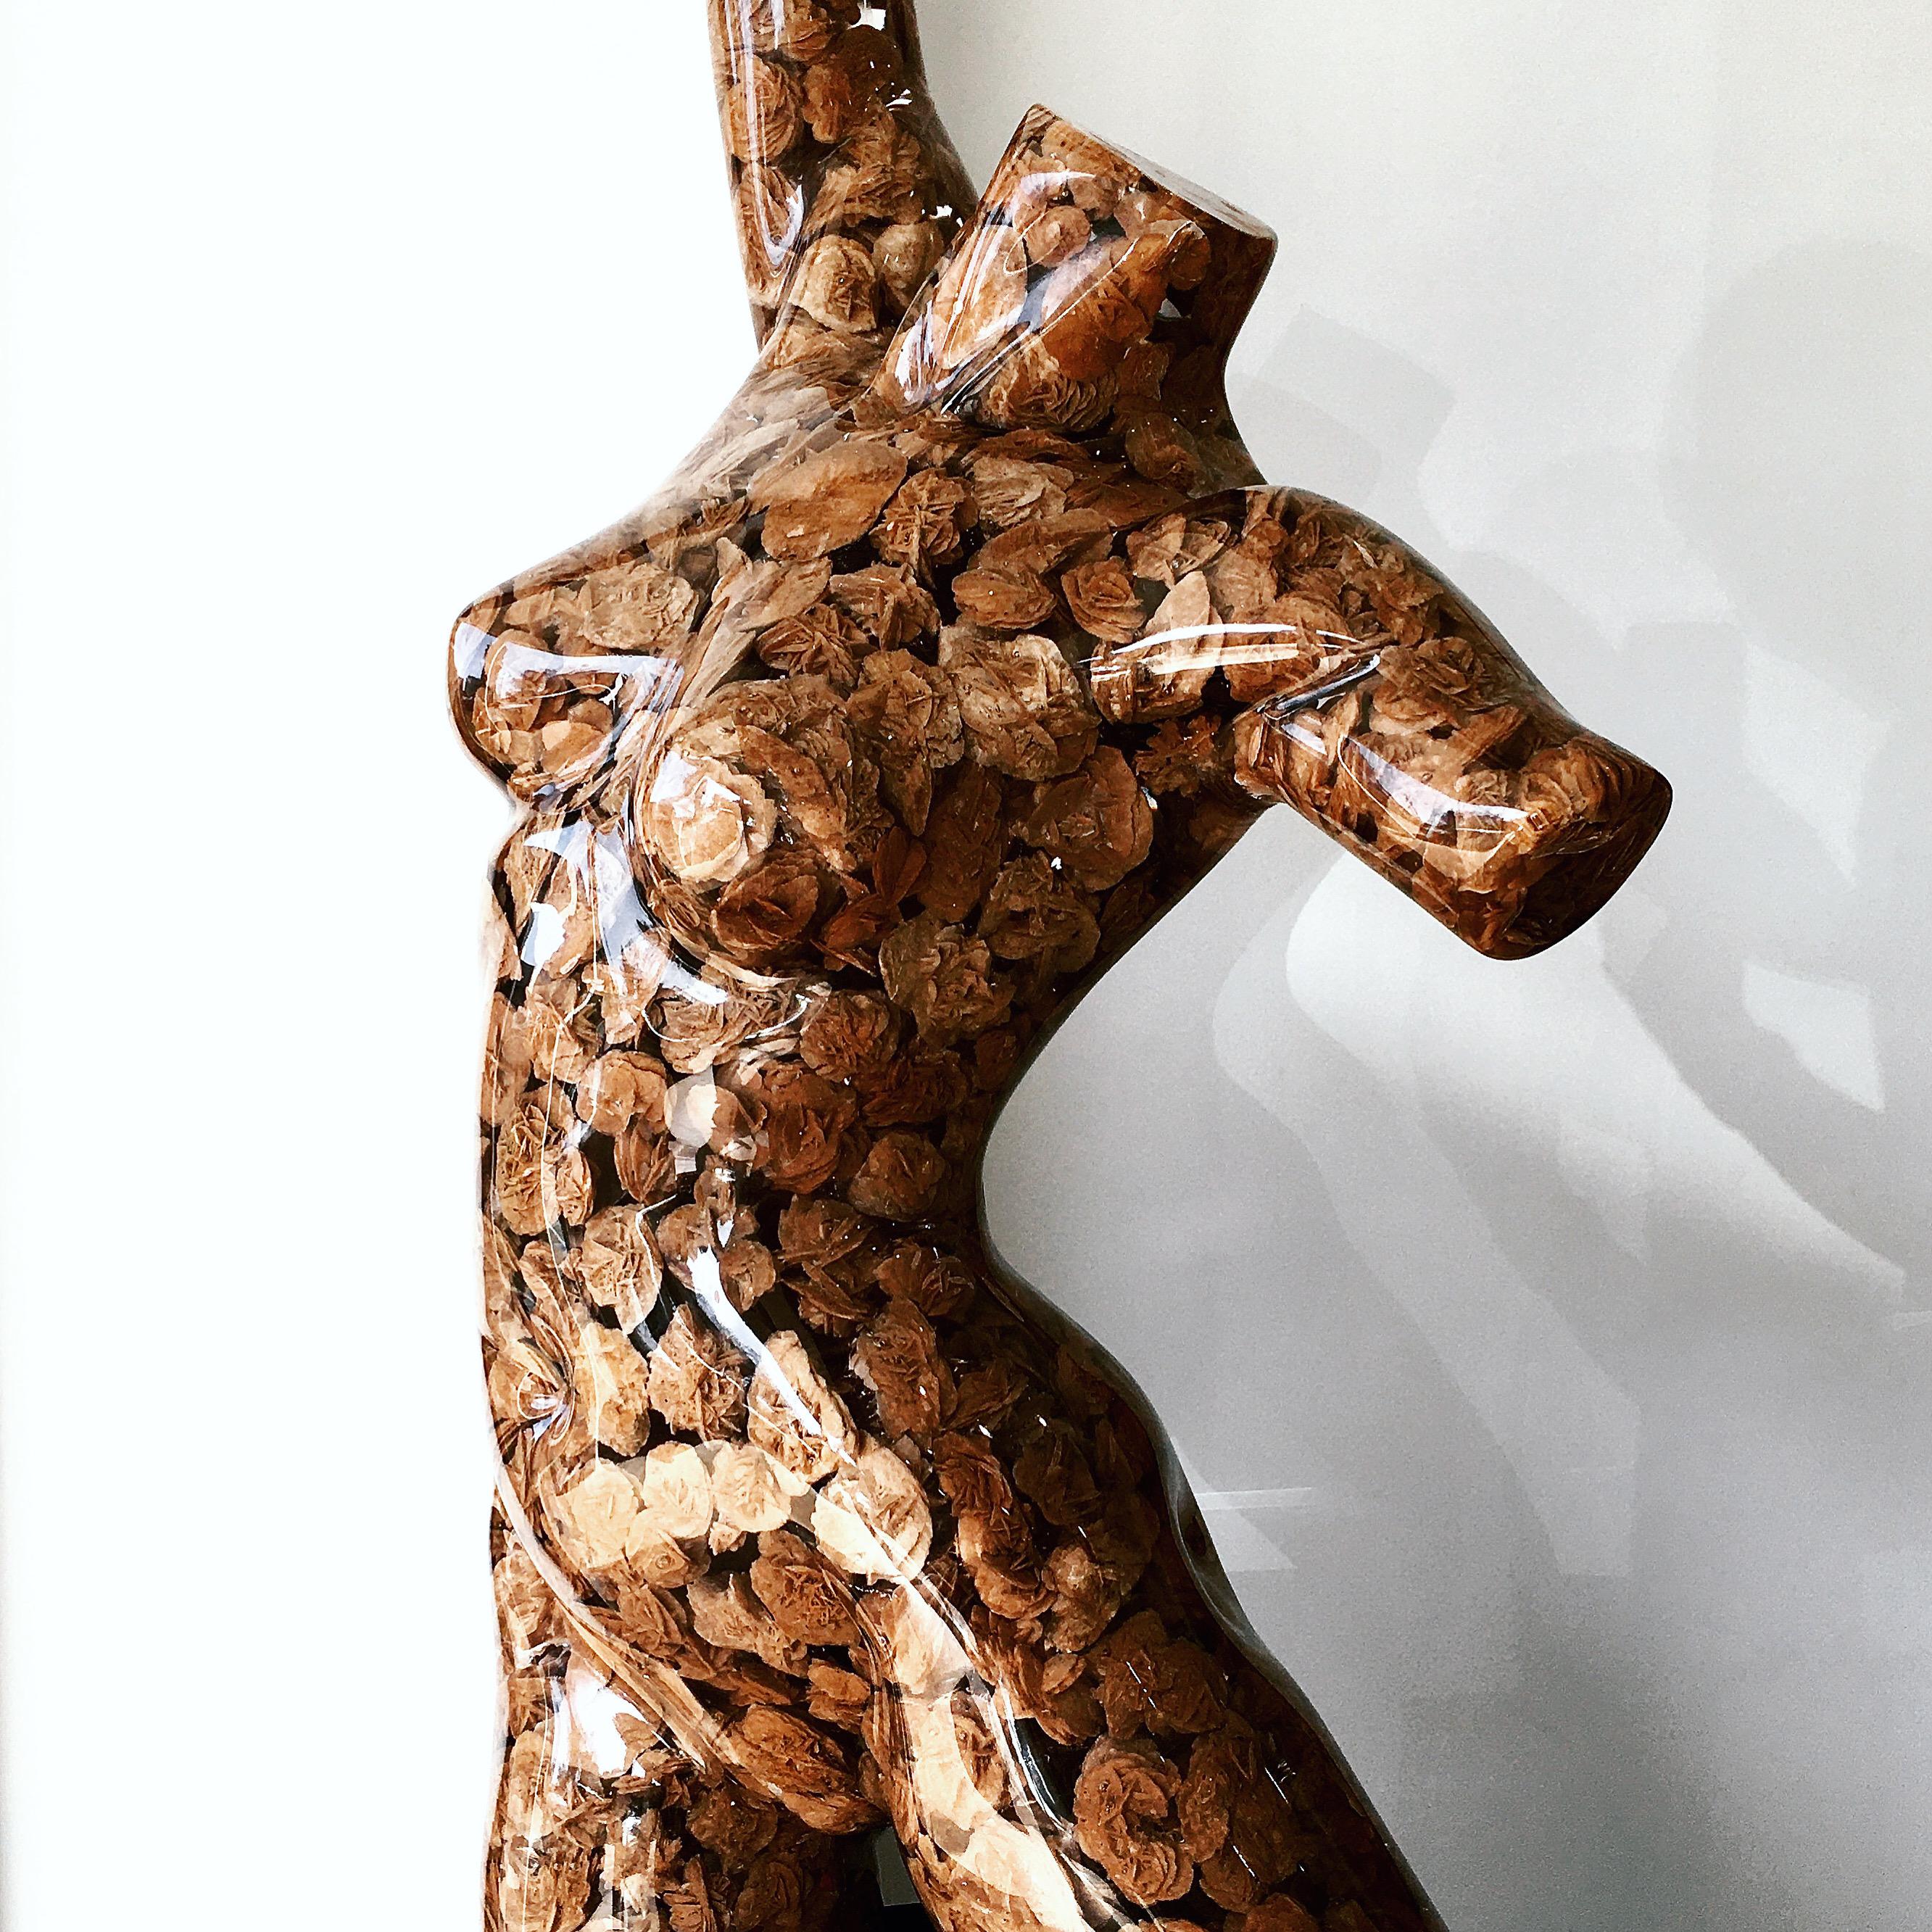 Guido Oakley Nude Sculpture – Desert-Rose